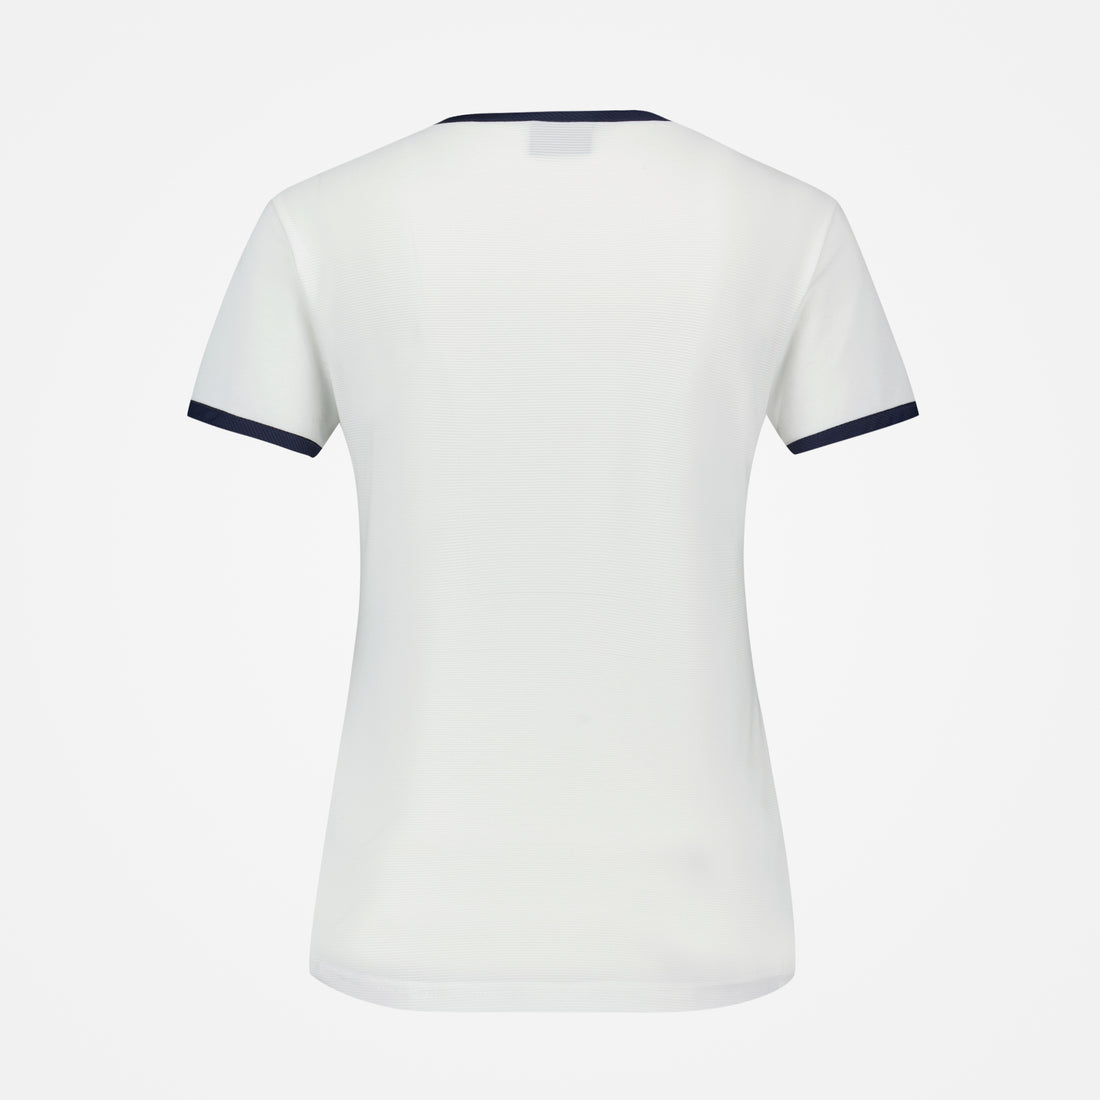 2320148-TENNIS Tee SS N°2 W new optical white/dr | T-shirt Femme